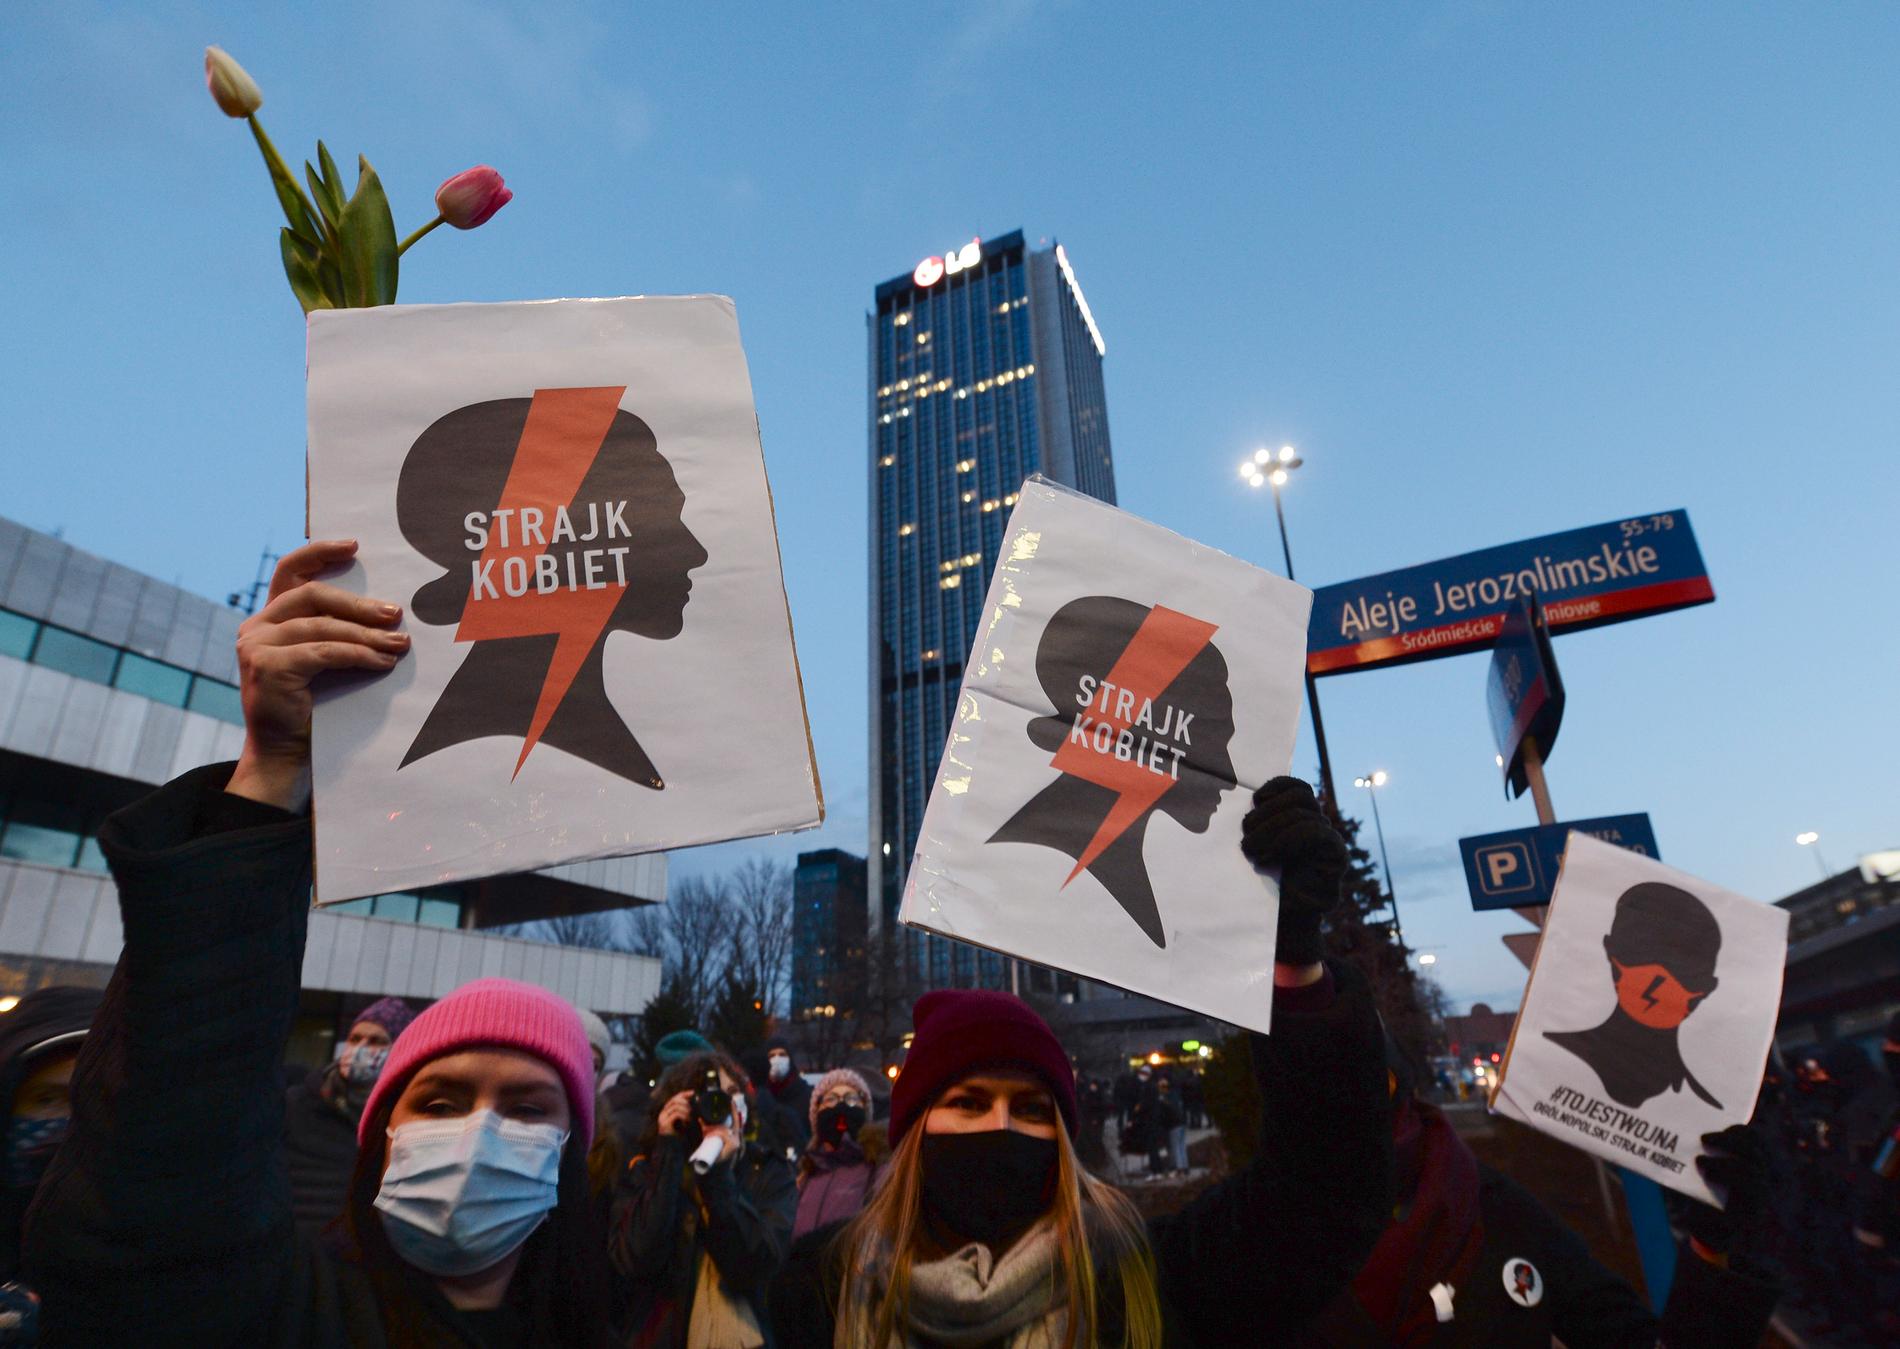 Kvinnostrejk, en polsk kvinnorättsorganisation, demonstrerade mot abortlagarna på 8 mars i fjol. Nu har landet utökat kontrollen, menar de. Arkivbild.